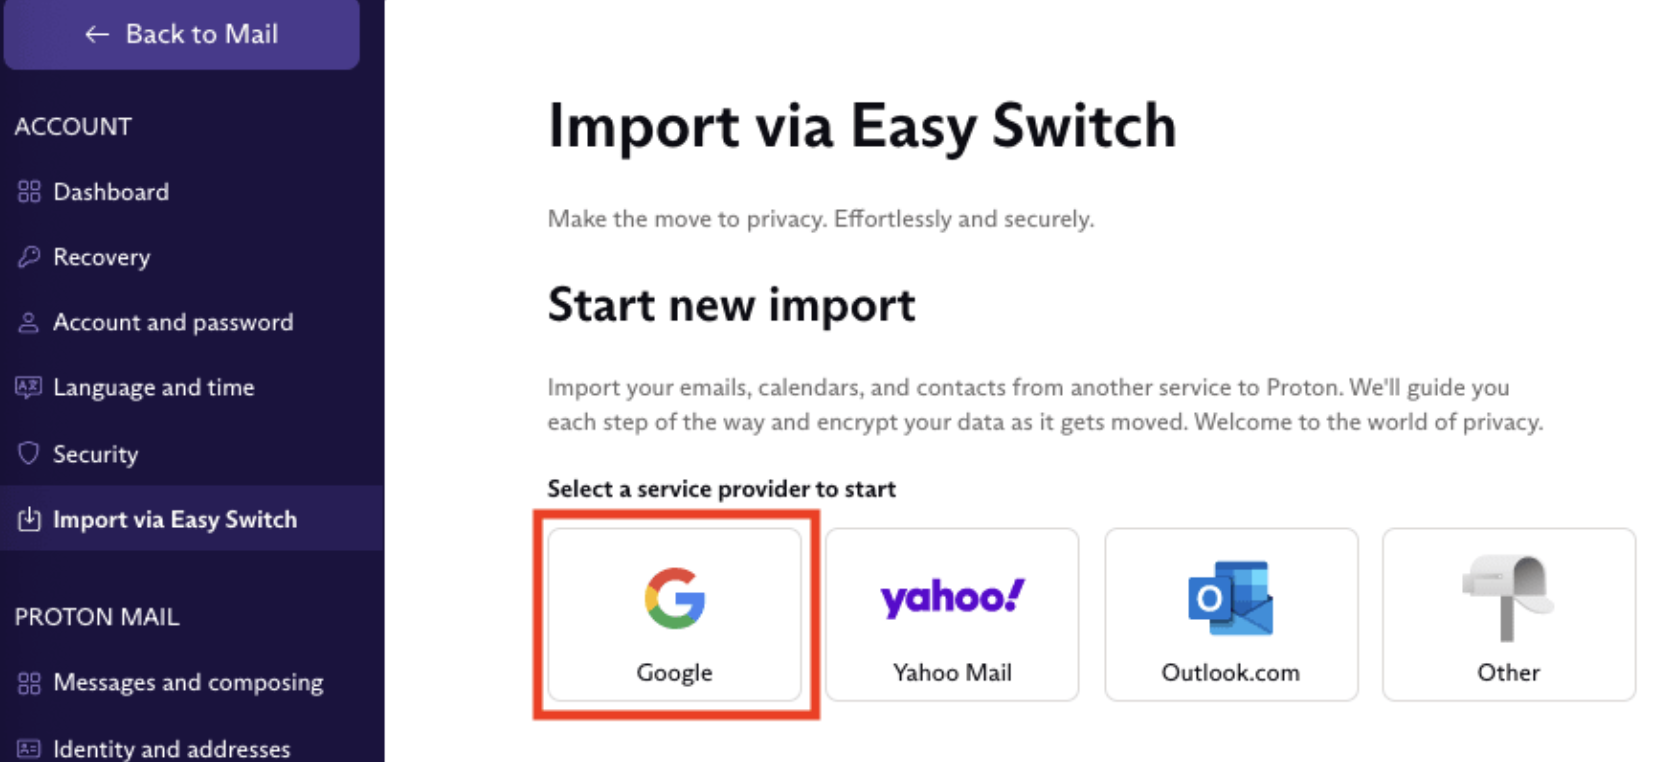 import via easy switch